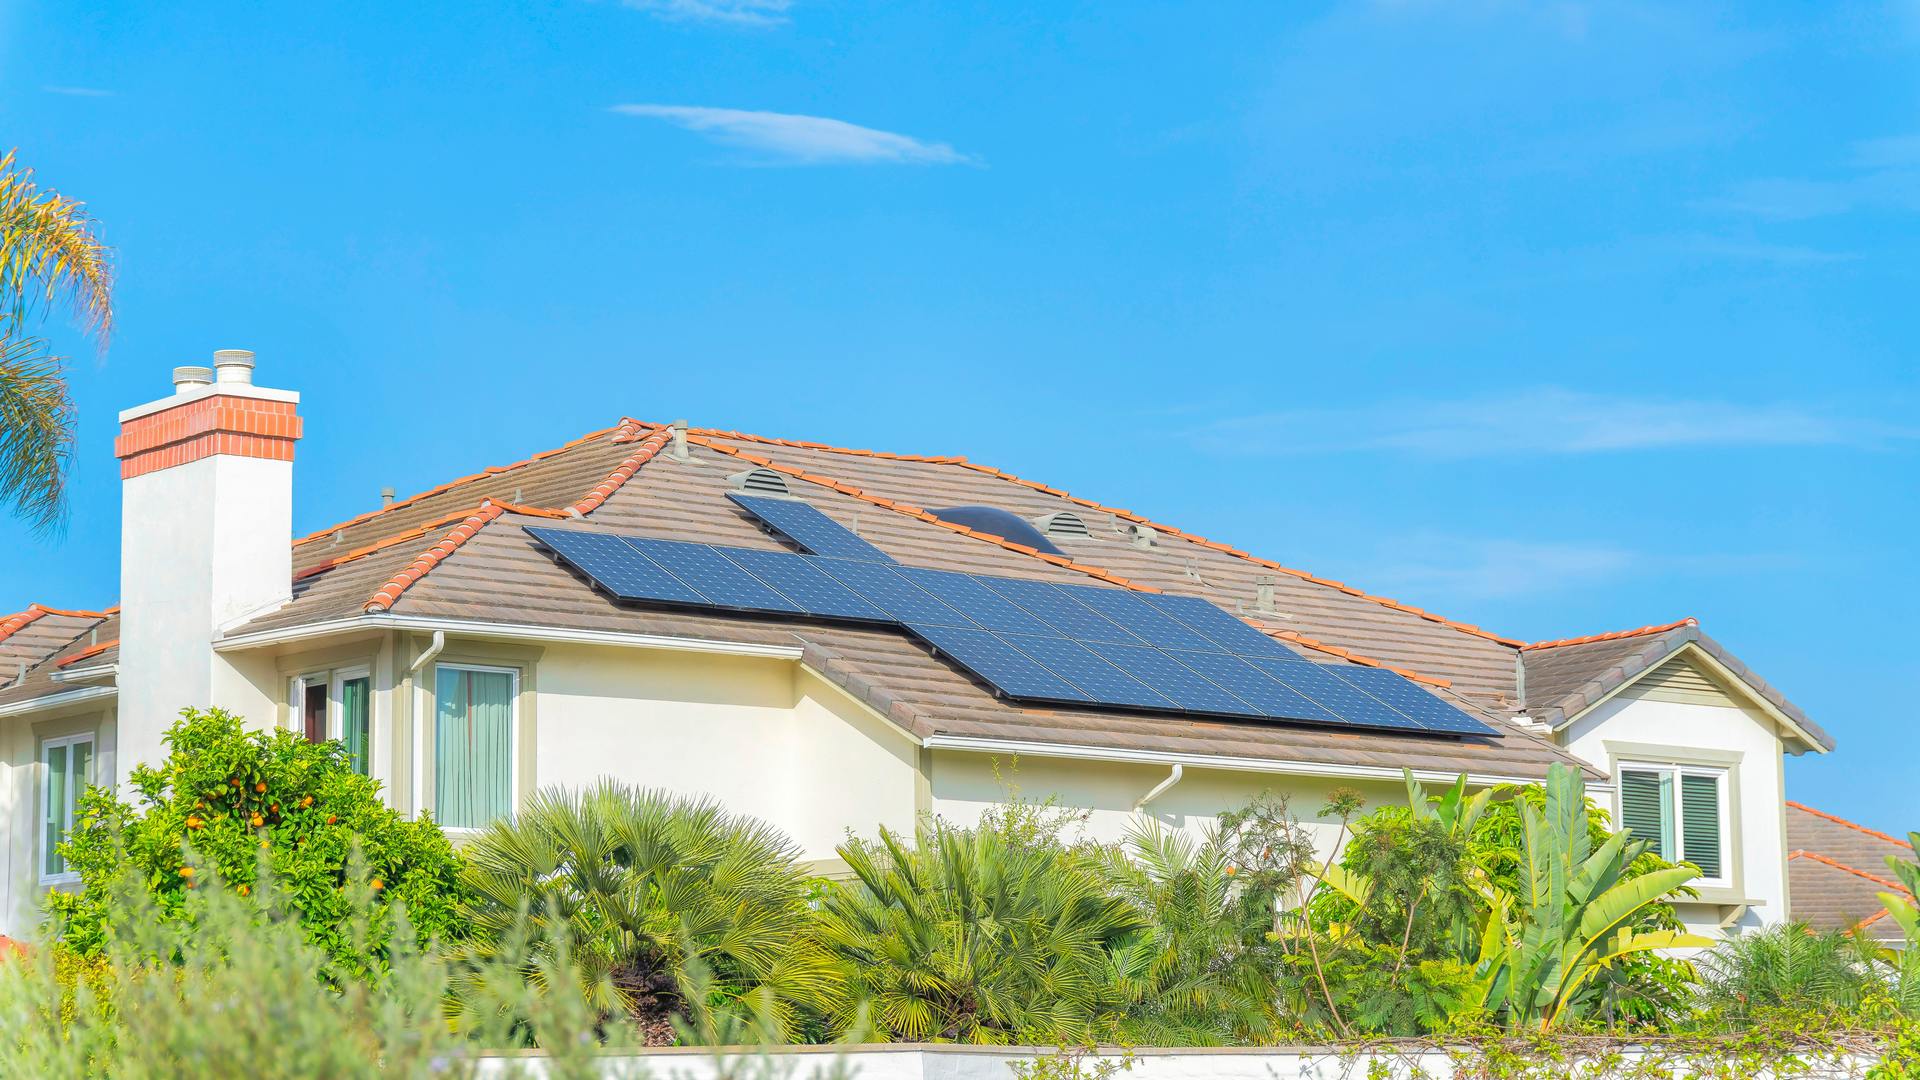 San Diego Residential Solar Installation Company